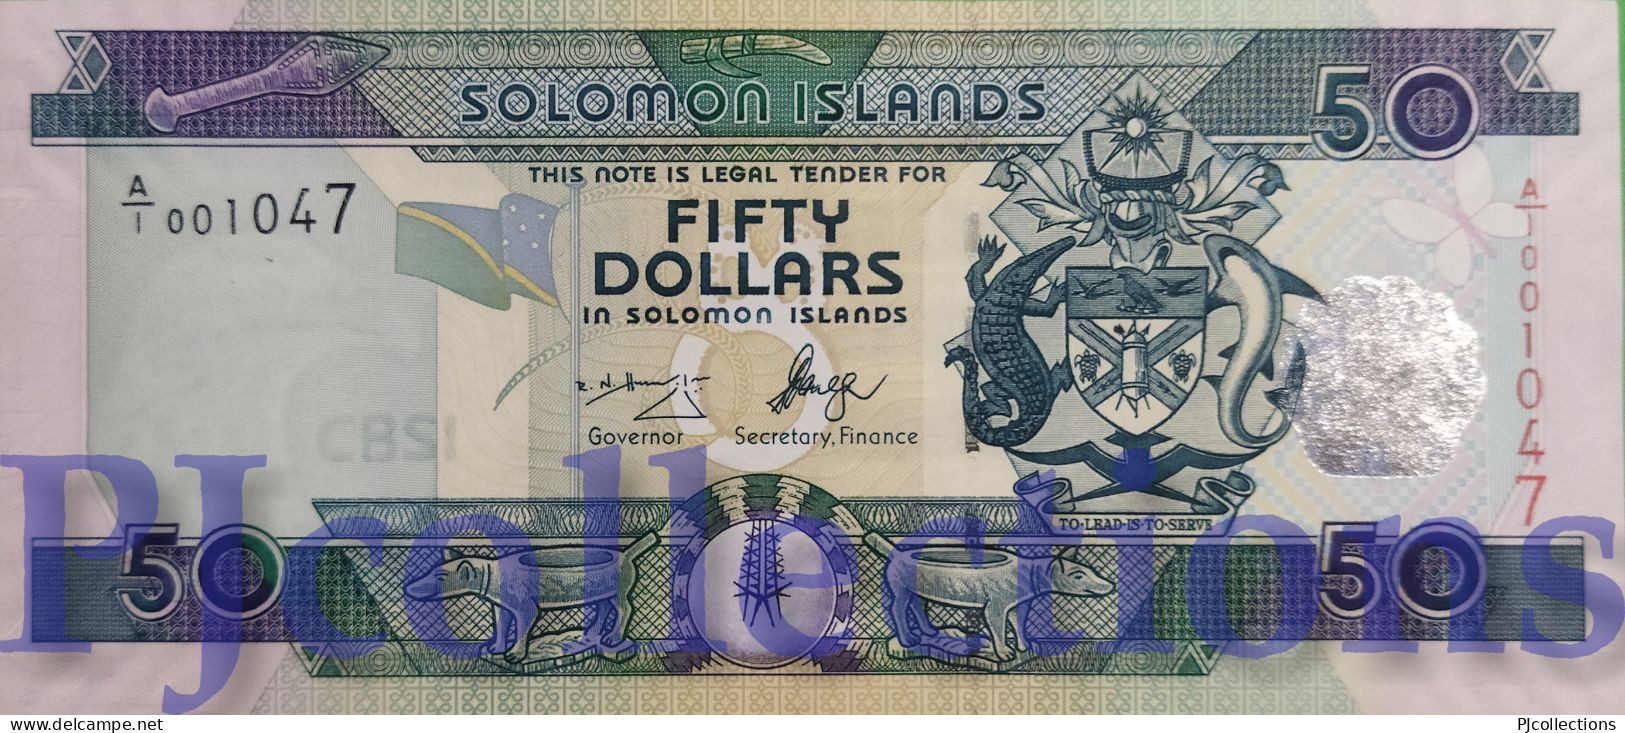 SOLOMON ISLANDS 50 DOLLARS 2004 PICK 29 UNC LOW SERIAL NUMBER "A/1 001038" - Solomonen